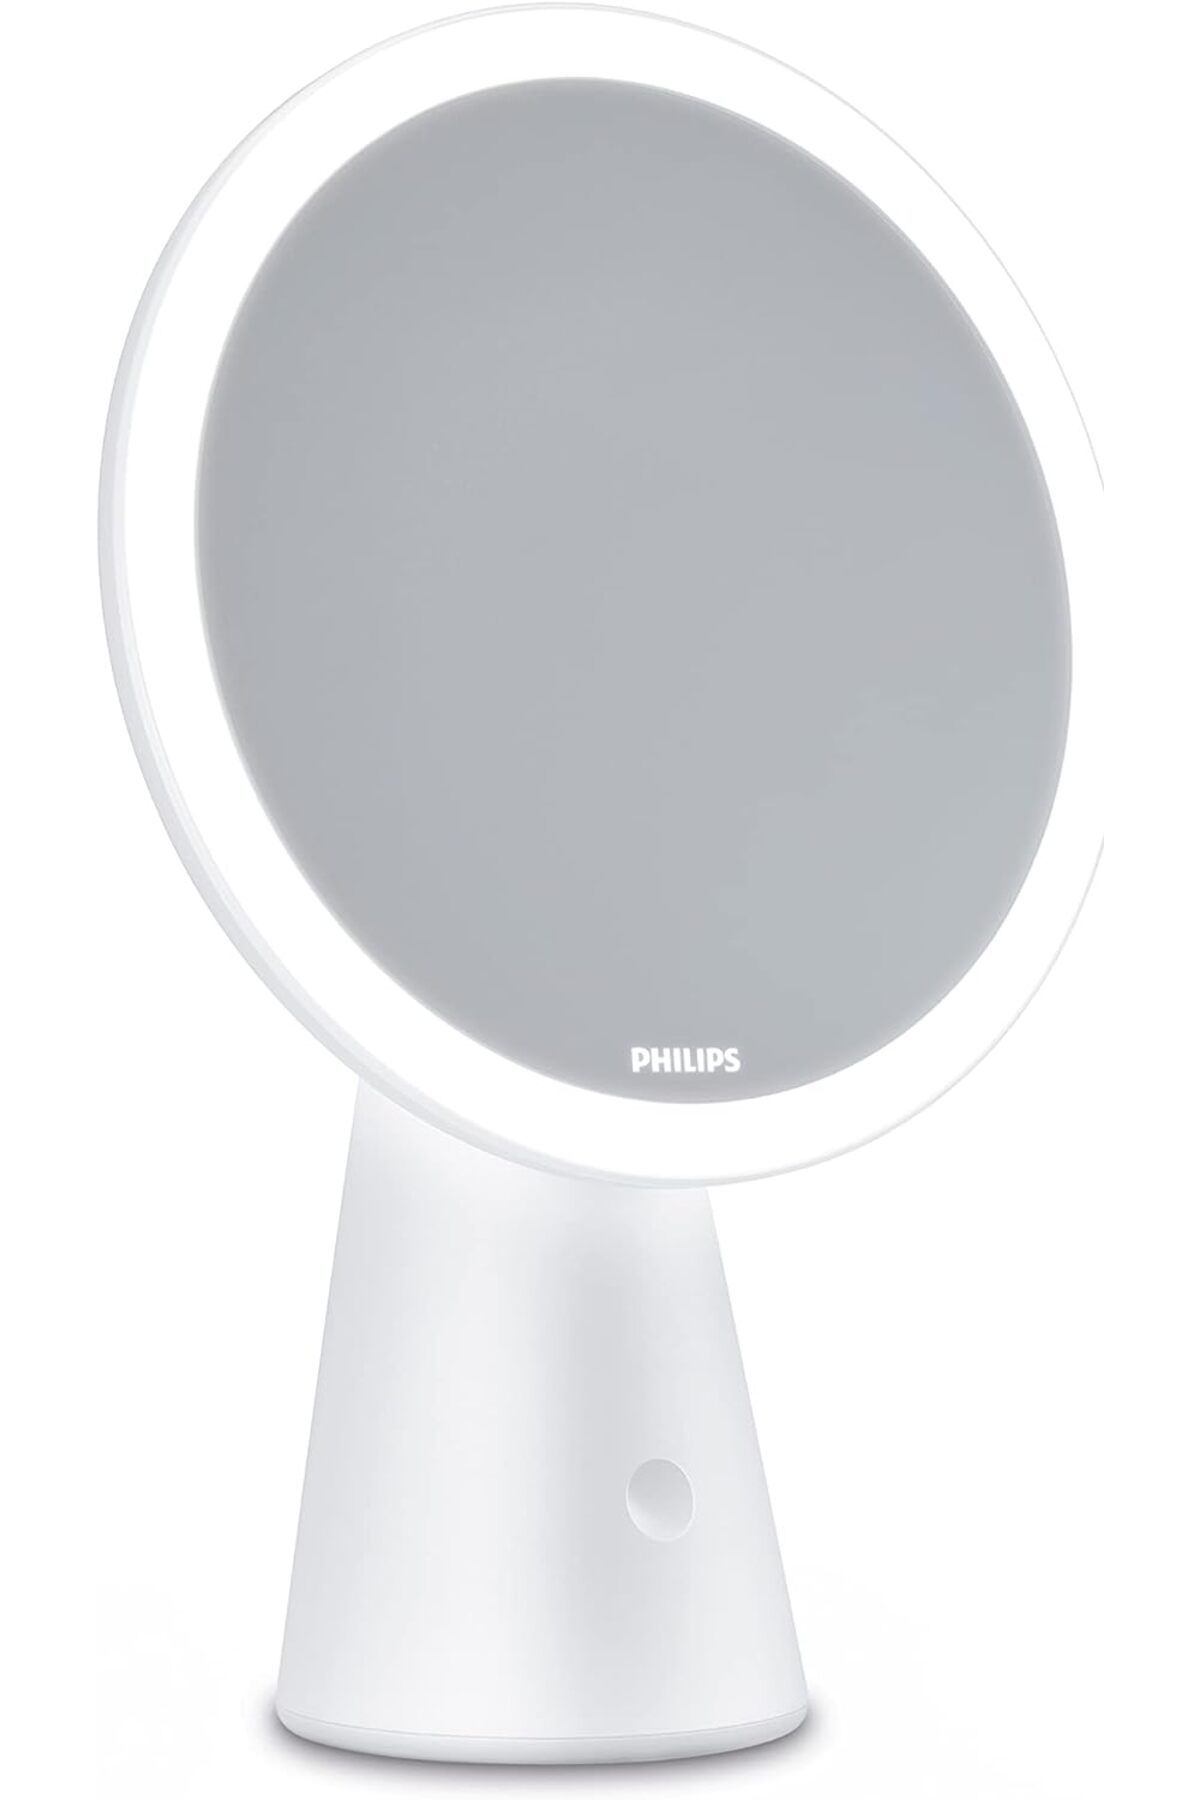 Philips Aynalı Masa Lambası, 3000 mAh Pil, 3000-5000K, 4,5W, Beyaz